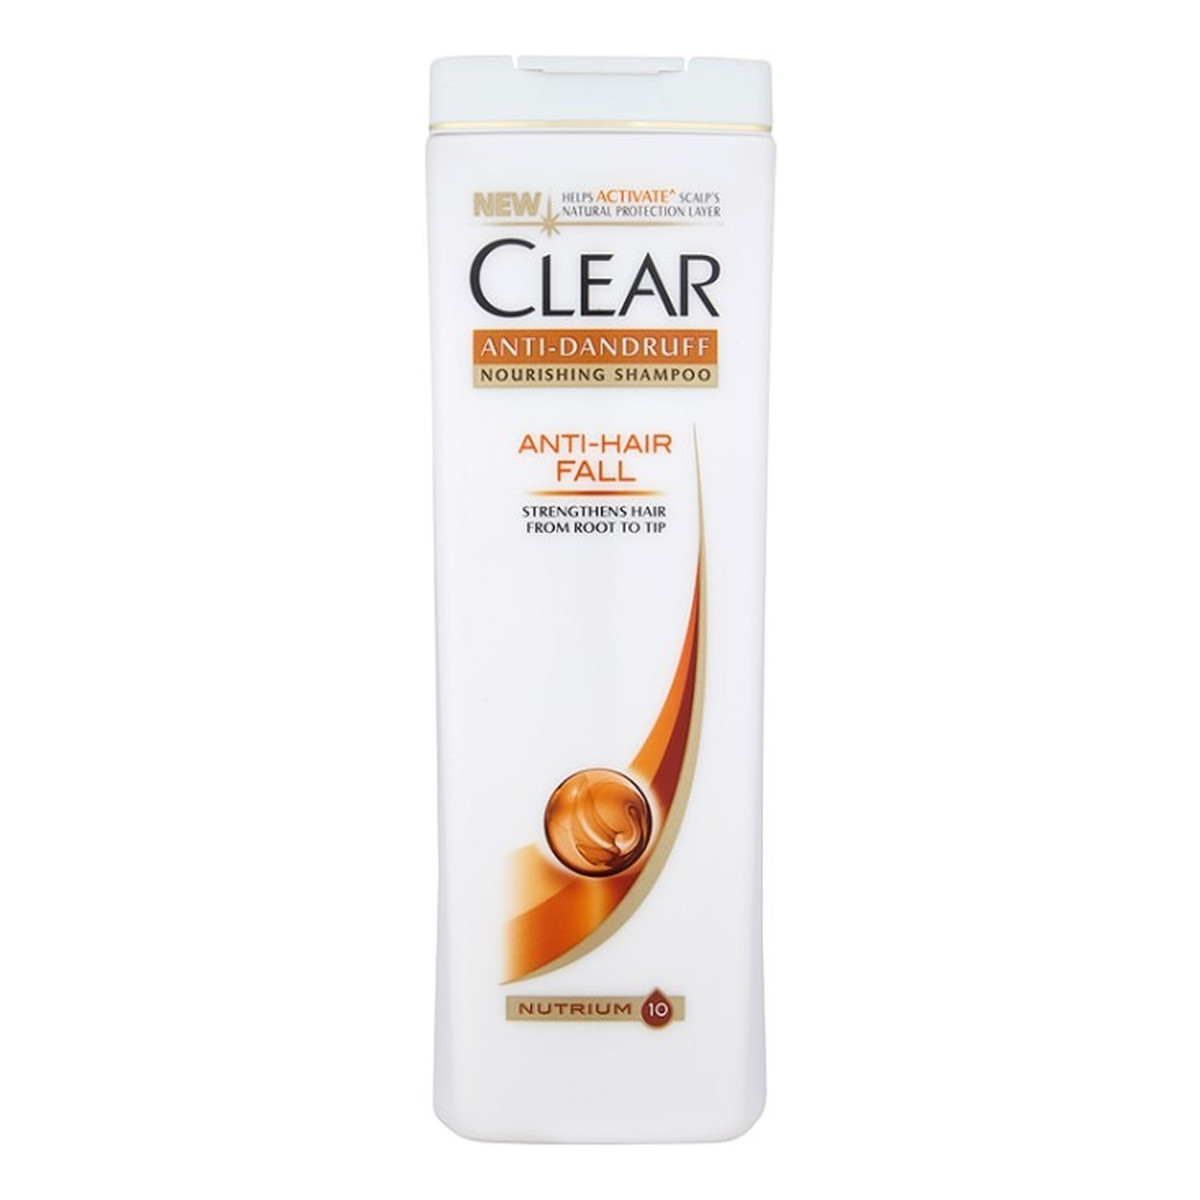 szampon clear dla kobiet tesco